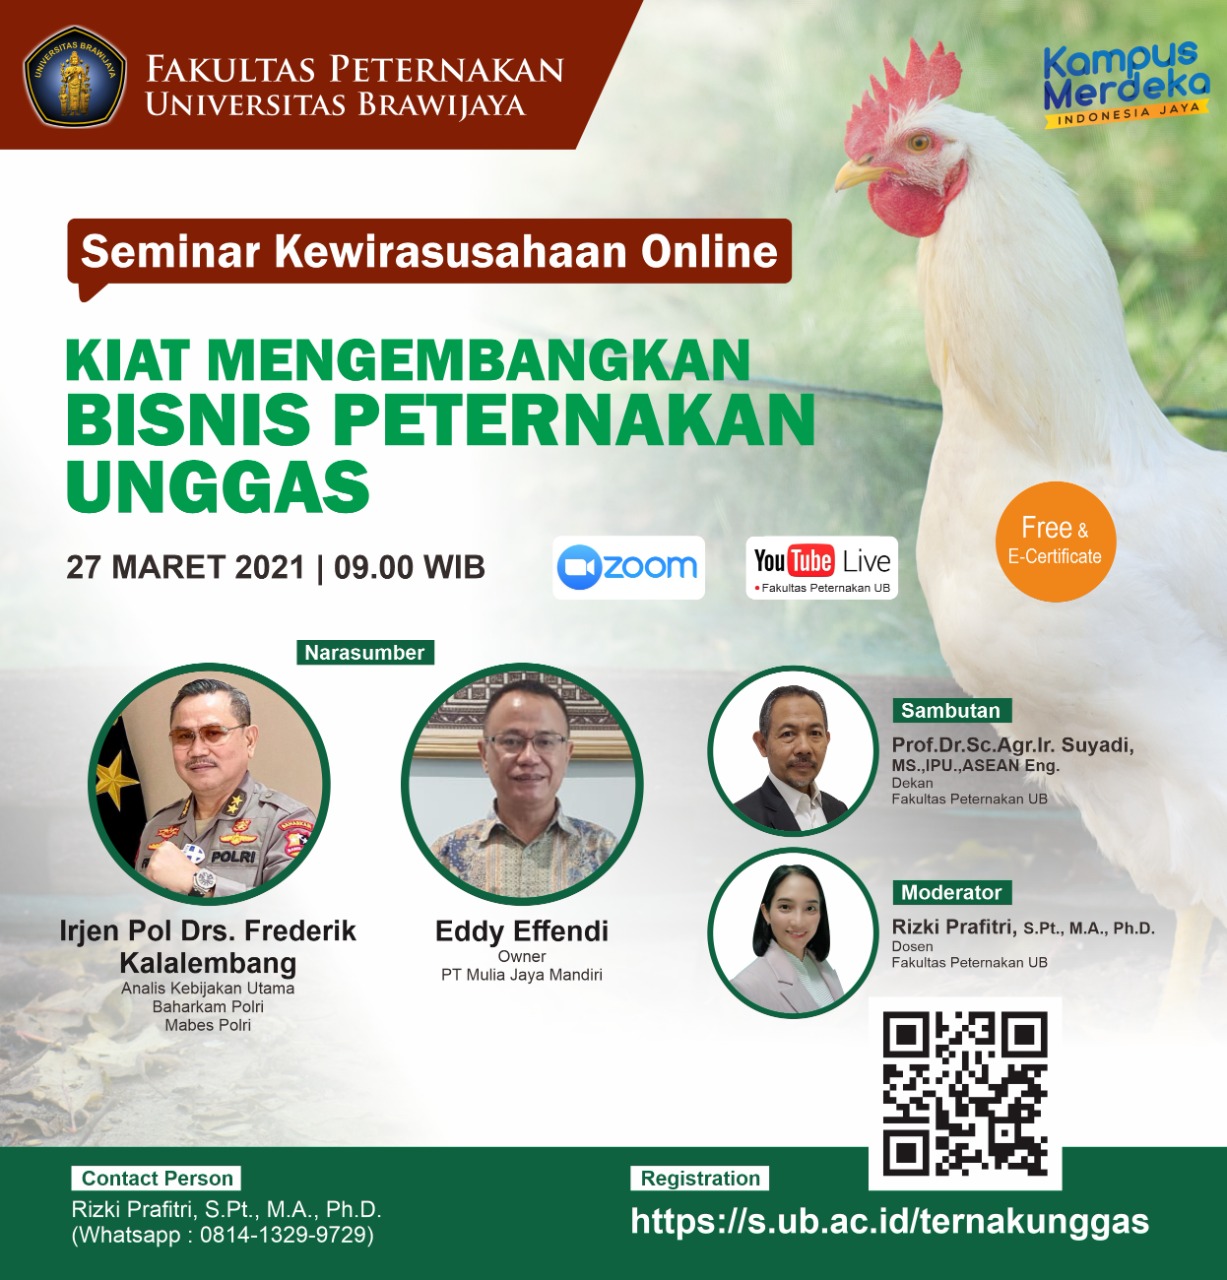 Online Entrepreneurship Seminar